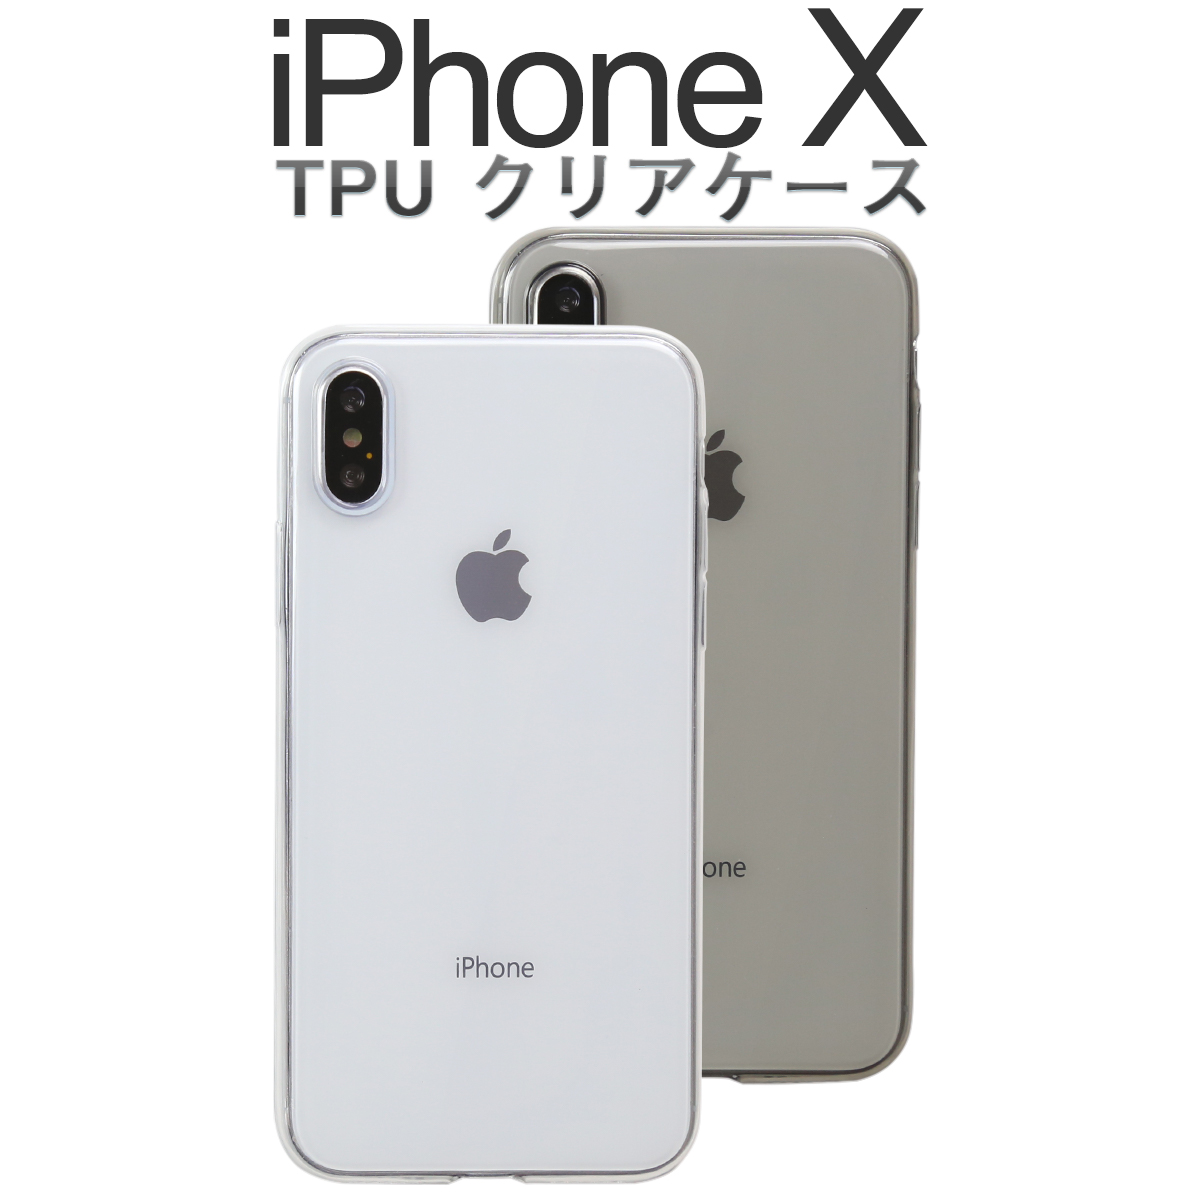 iPhoneX TPU クリアケース